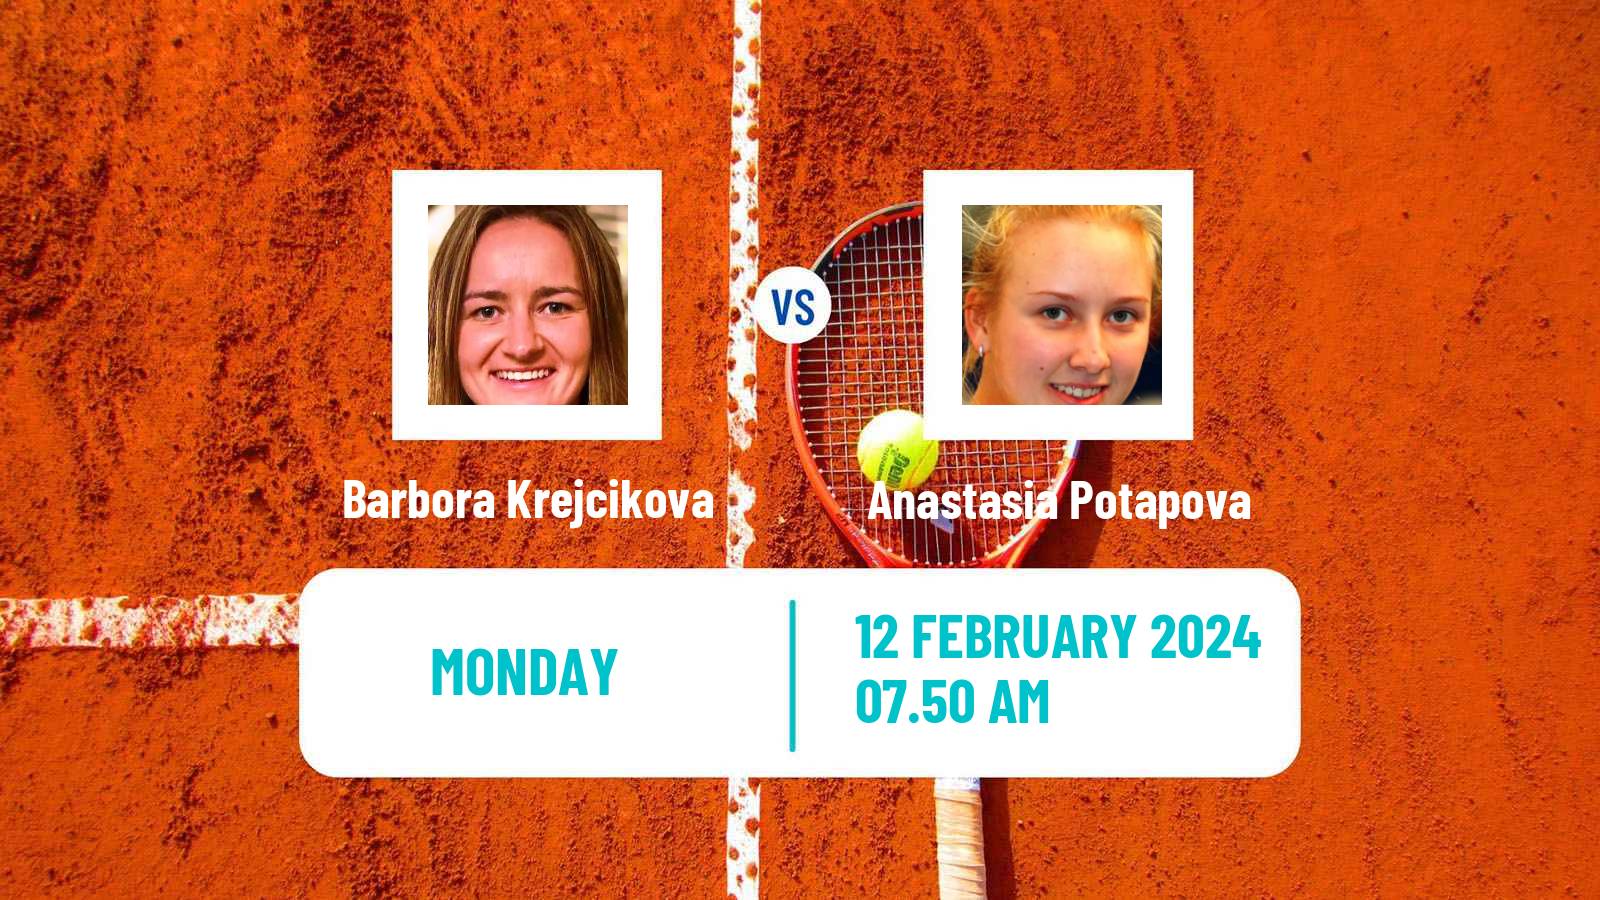 Tennis WTA Doha Barbora Krejcikova - Anastasia Potapova